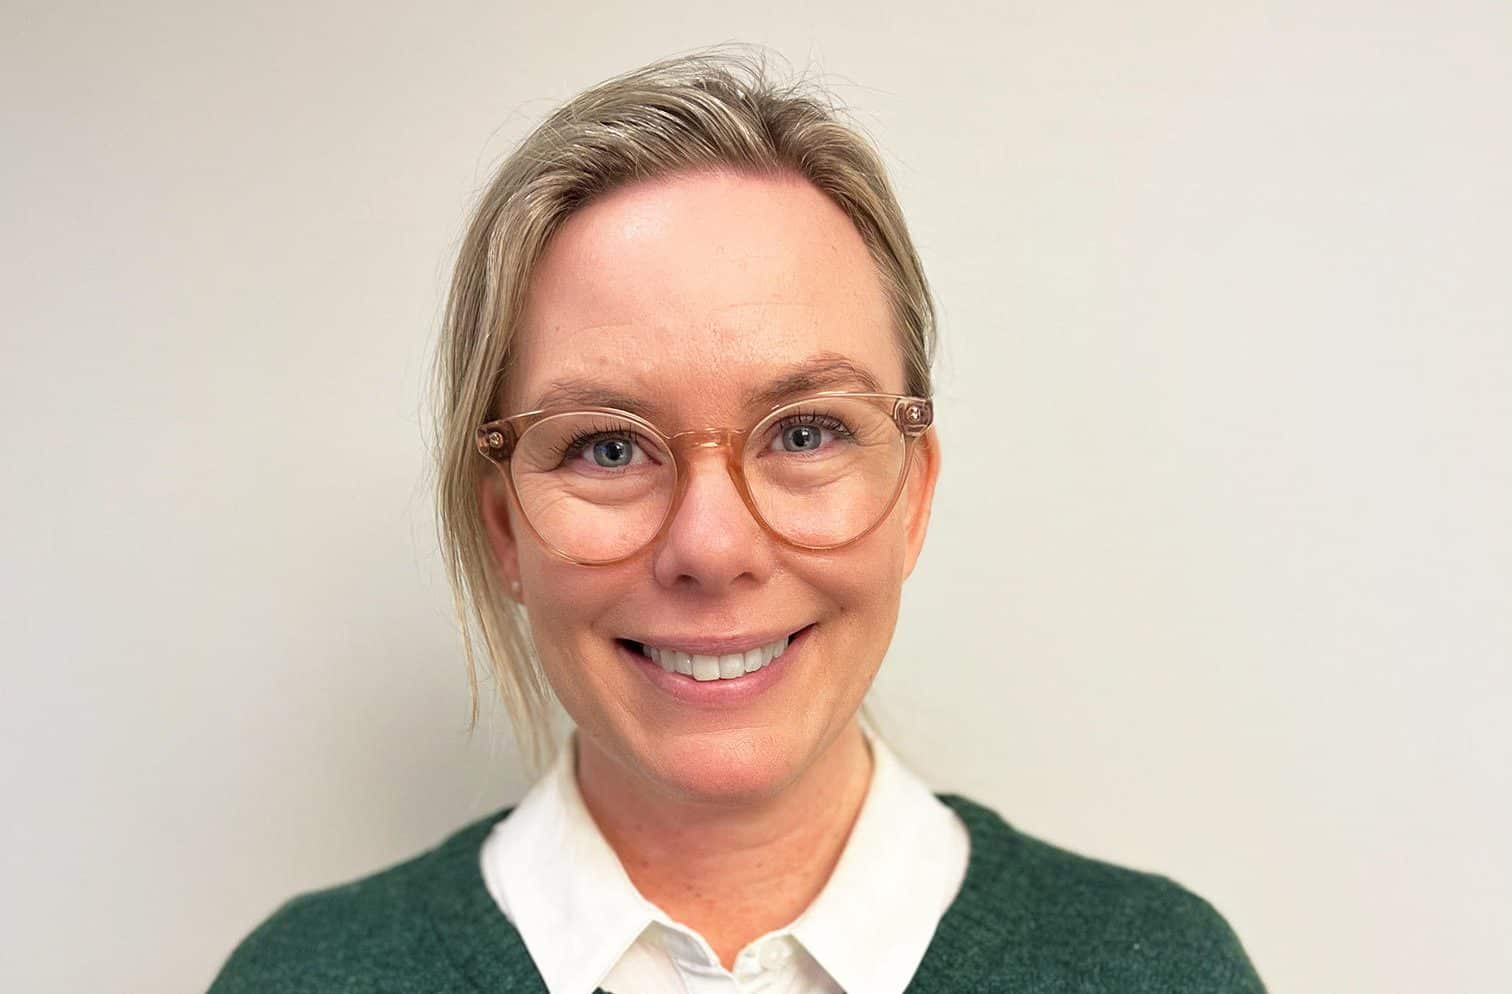 Möt Susanne Dalström CEO Executive Assistant på Kry